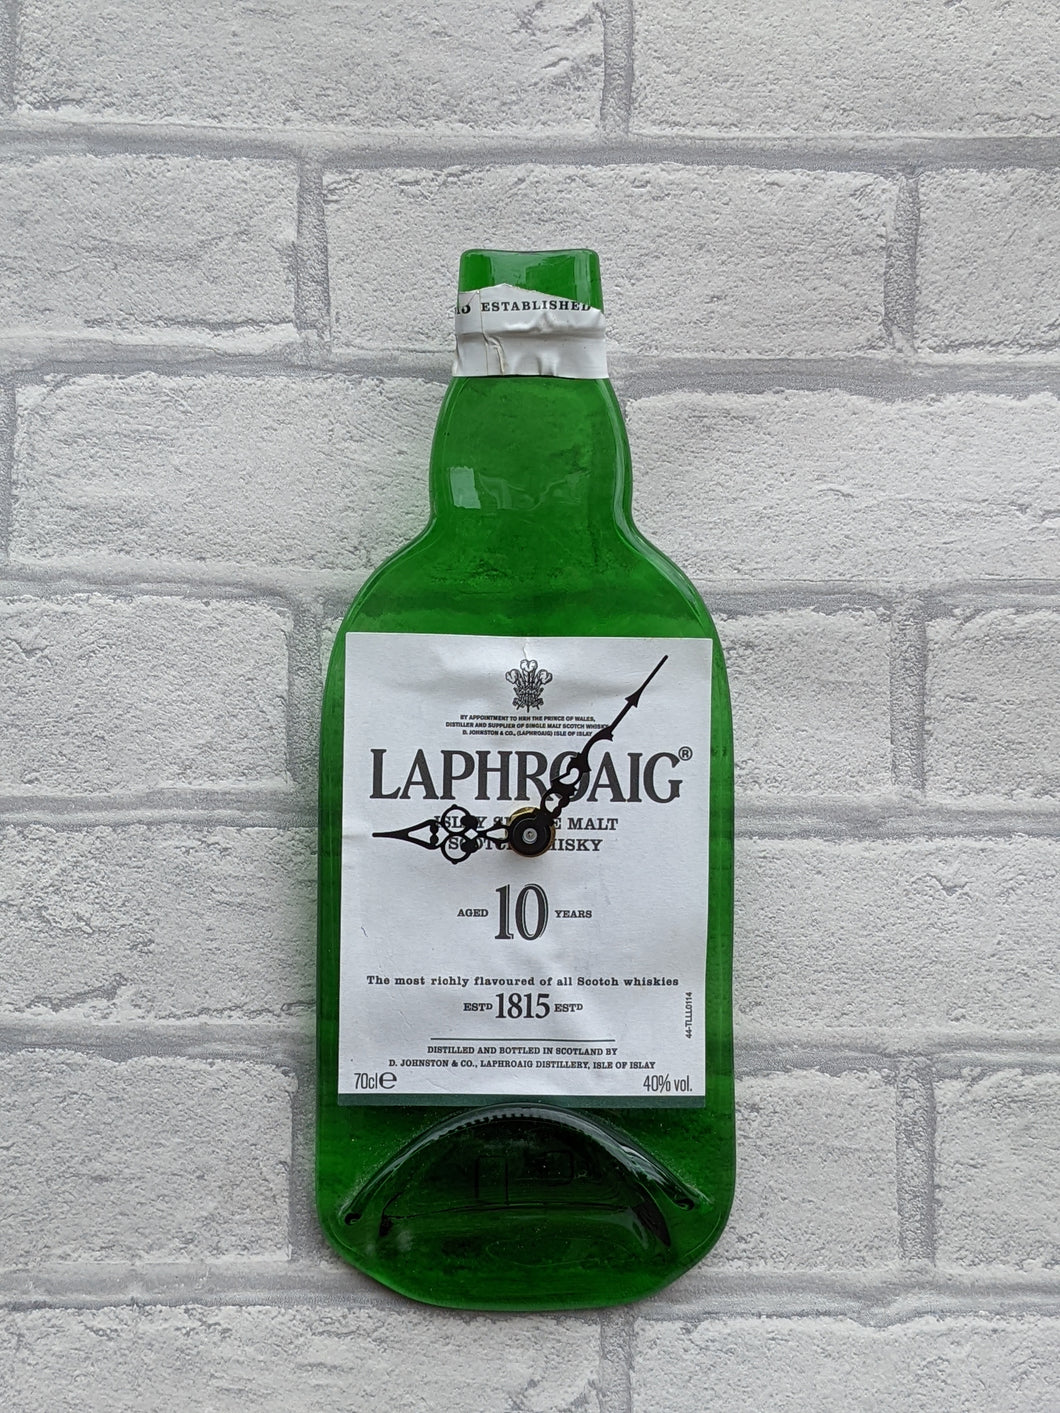 Laphroaig whisky bottle clock